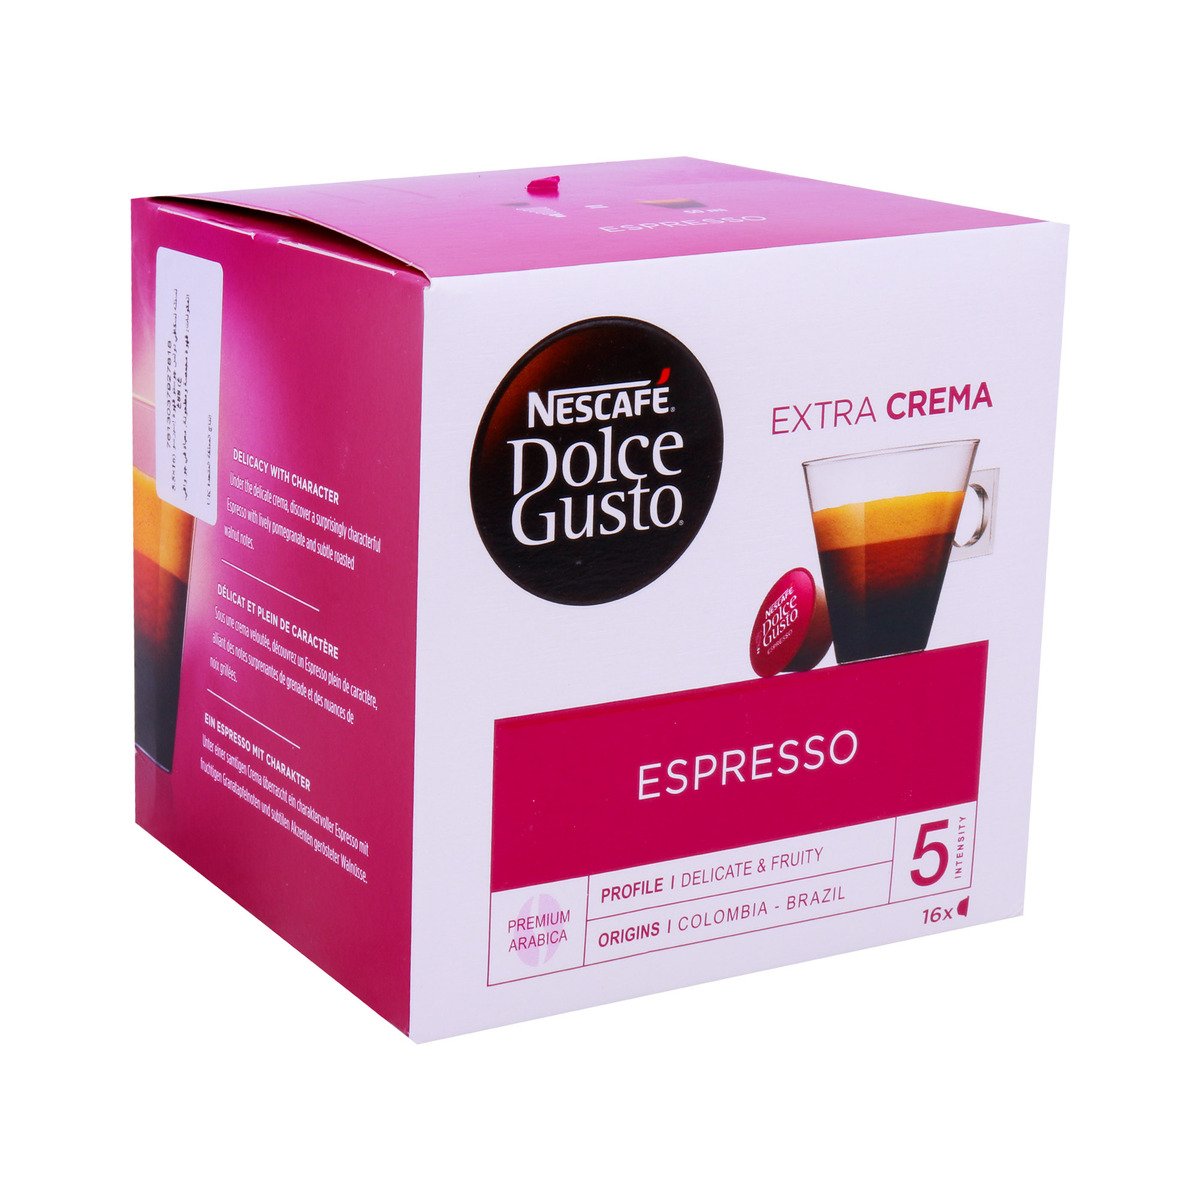 Nescafe Dolce Gusto Espresso Extra Crema 16pcs